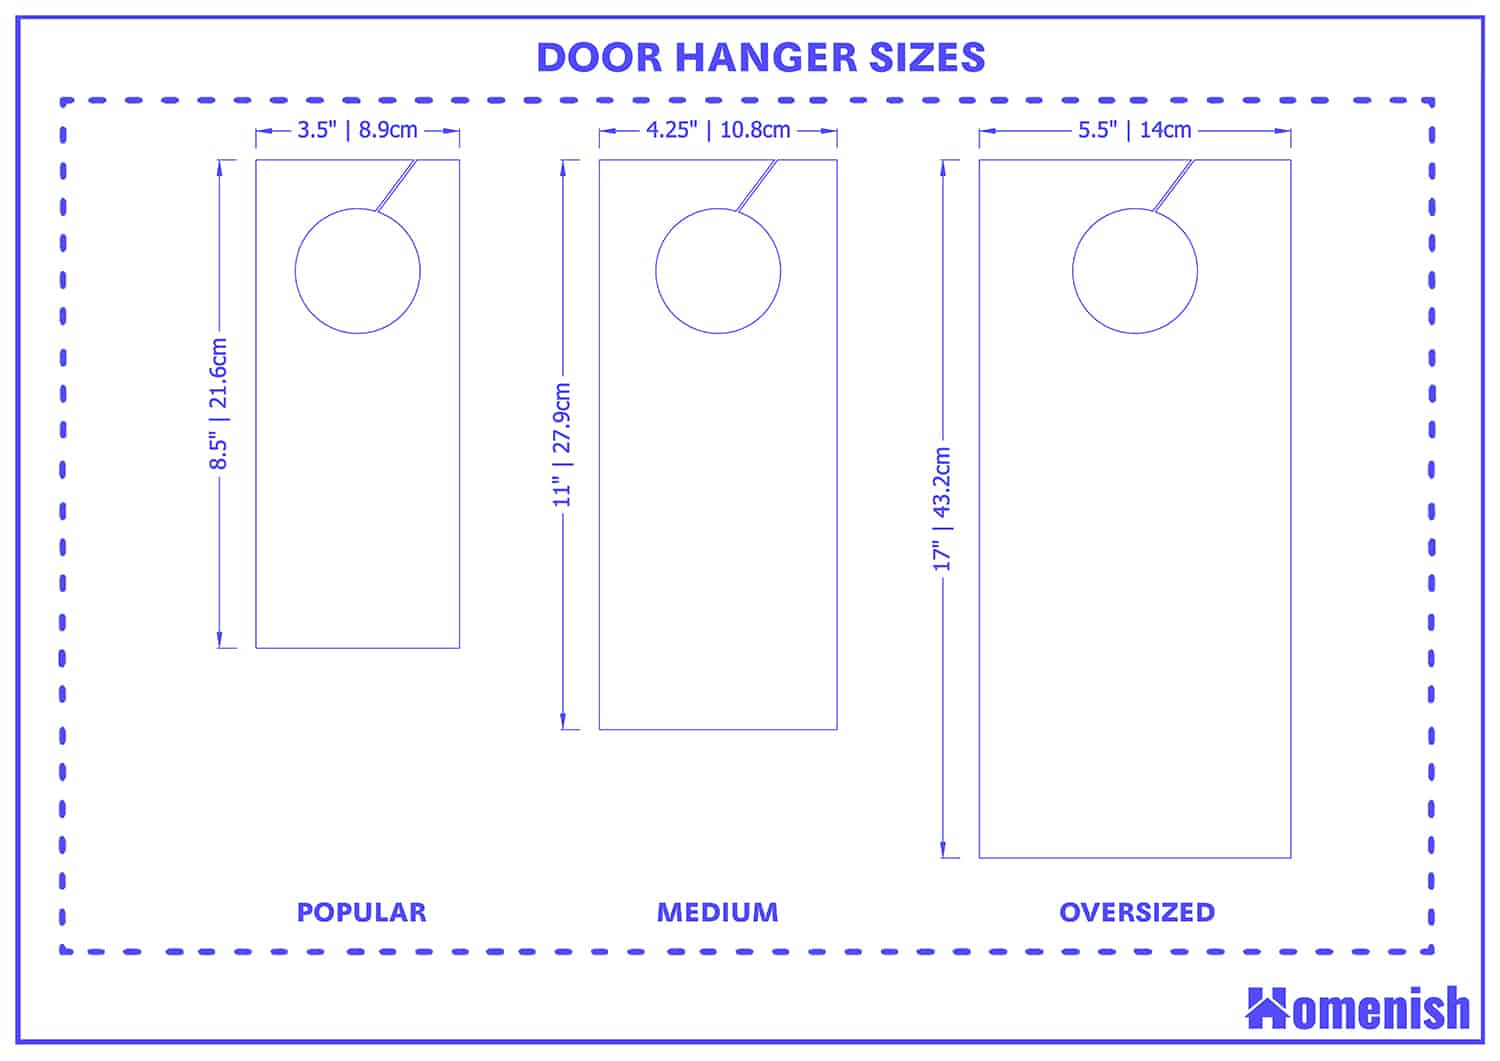 Door hanger sizes